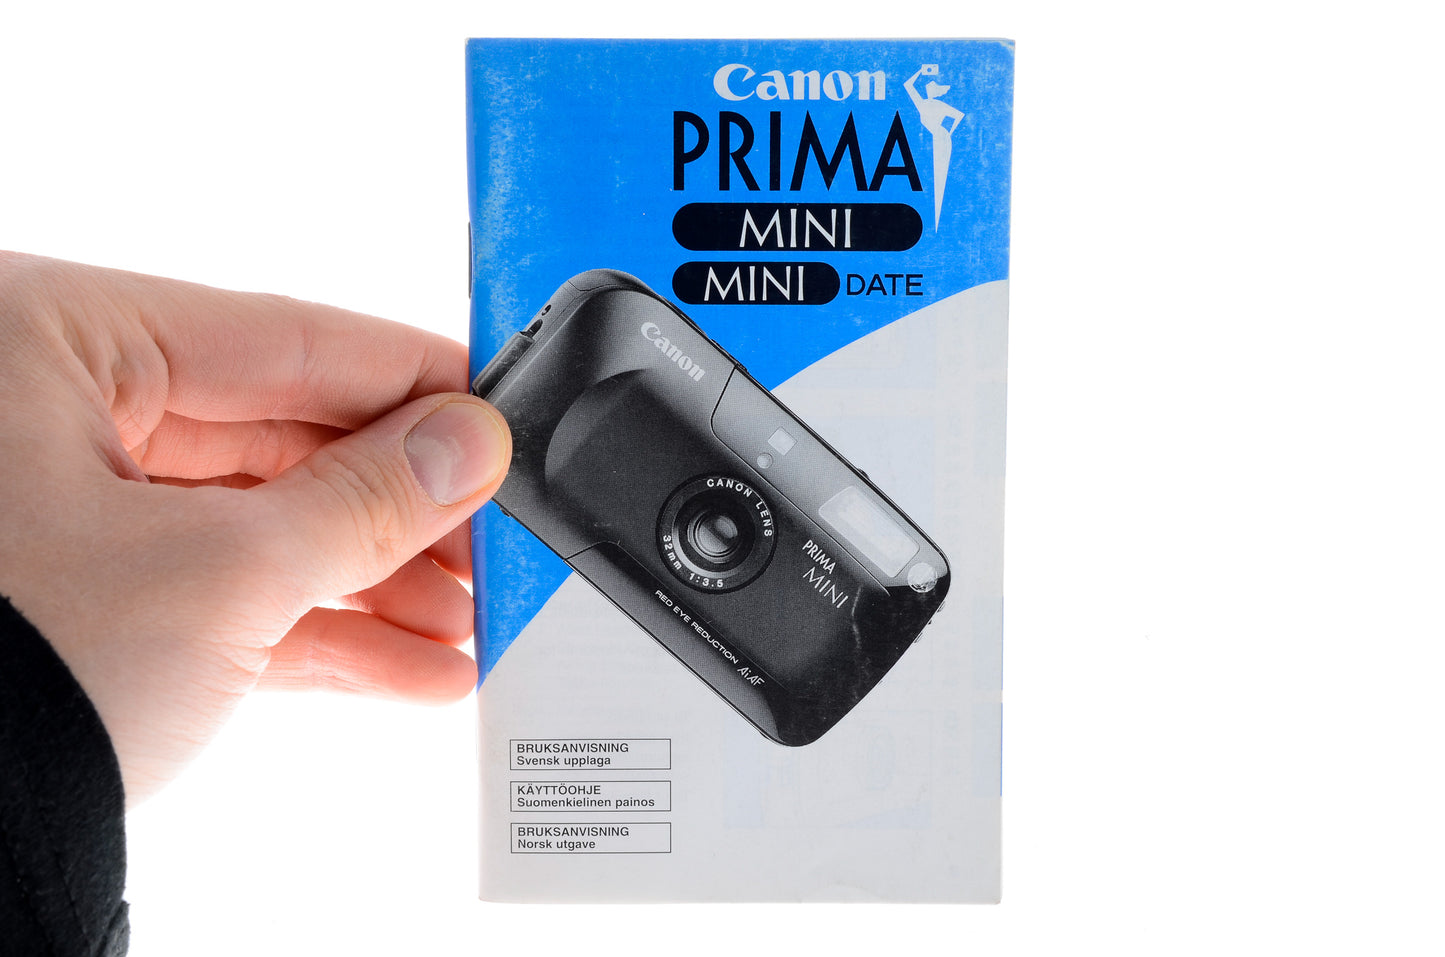 Canon Prima Mini Instructions